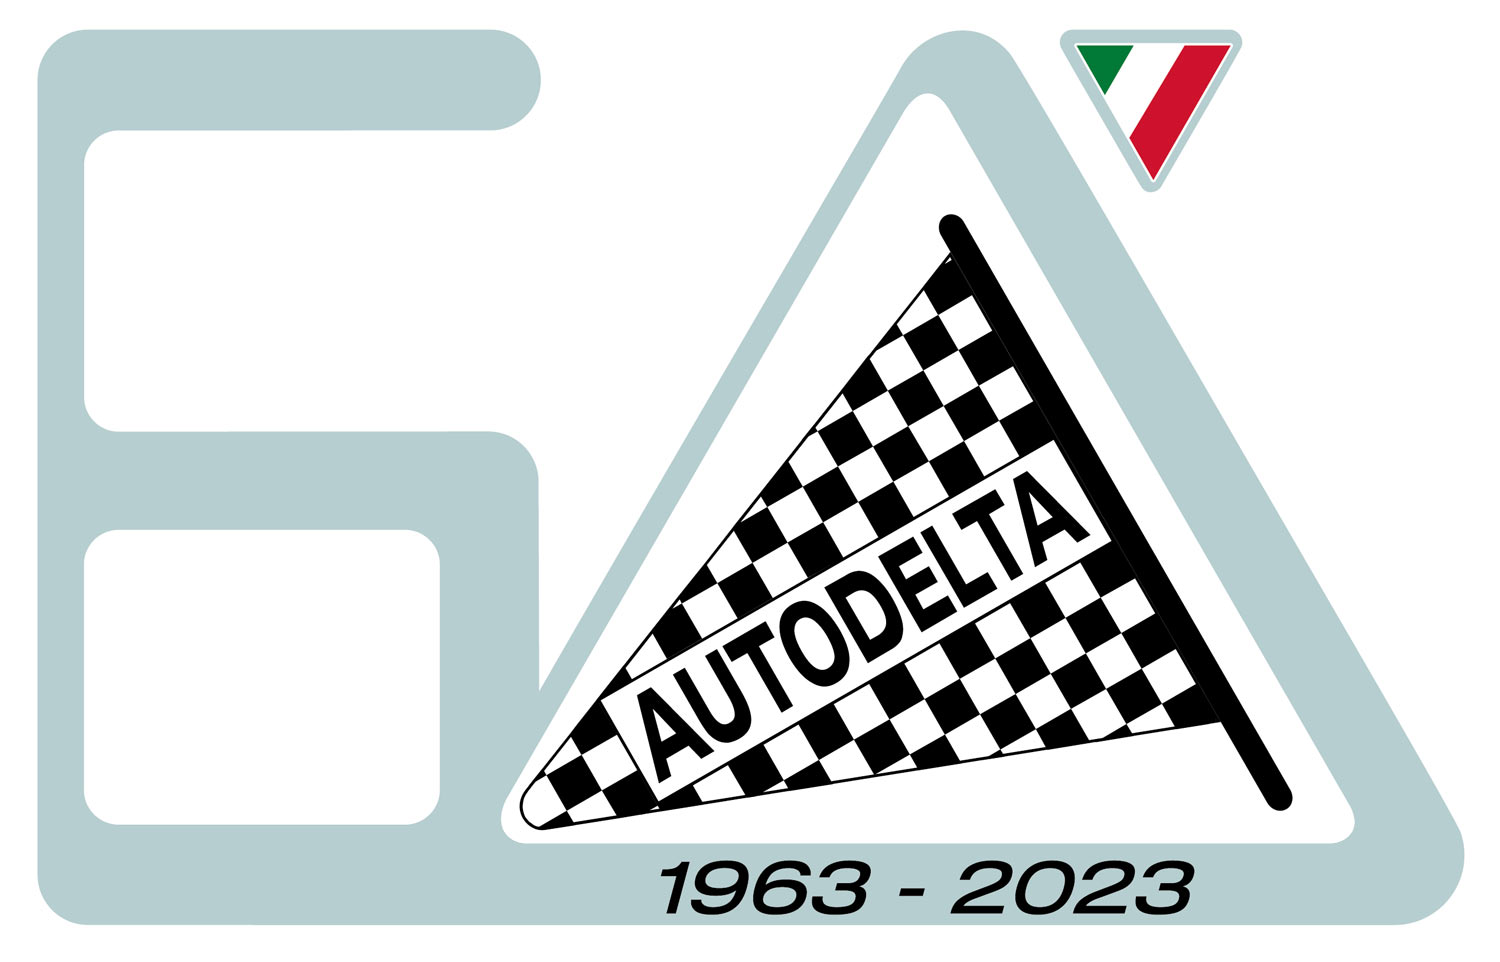 Doppi festeggiamenti in casa Alfa Romeo, 100 anni del Quadrifoglio e i 60 dell'Autodelta, pietre miliari nella storia della casa di Arese.